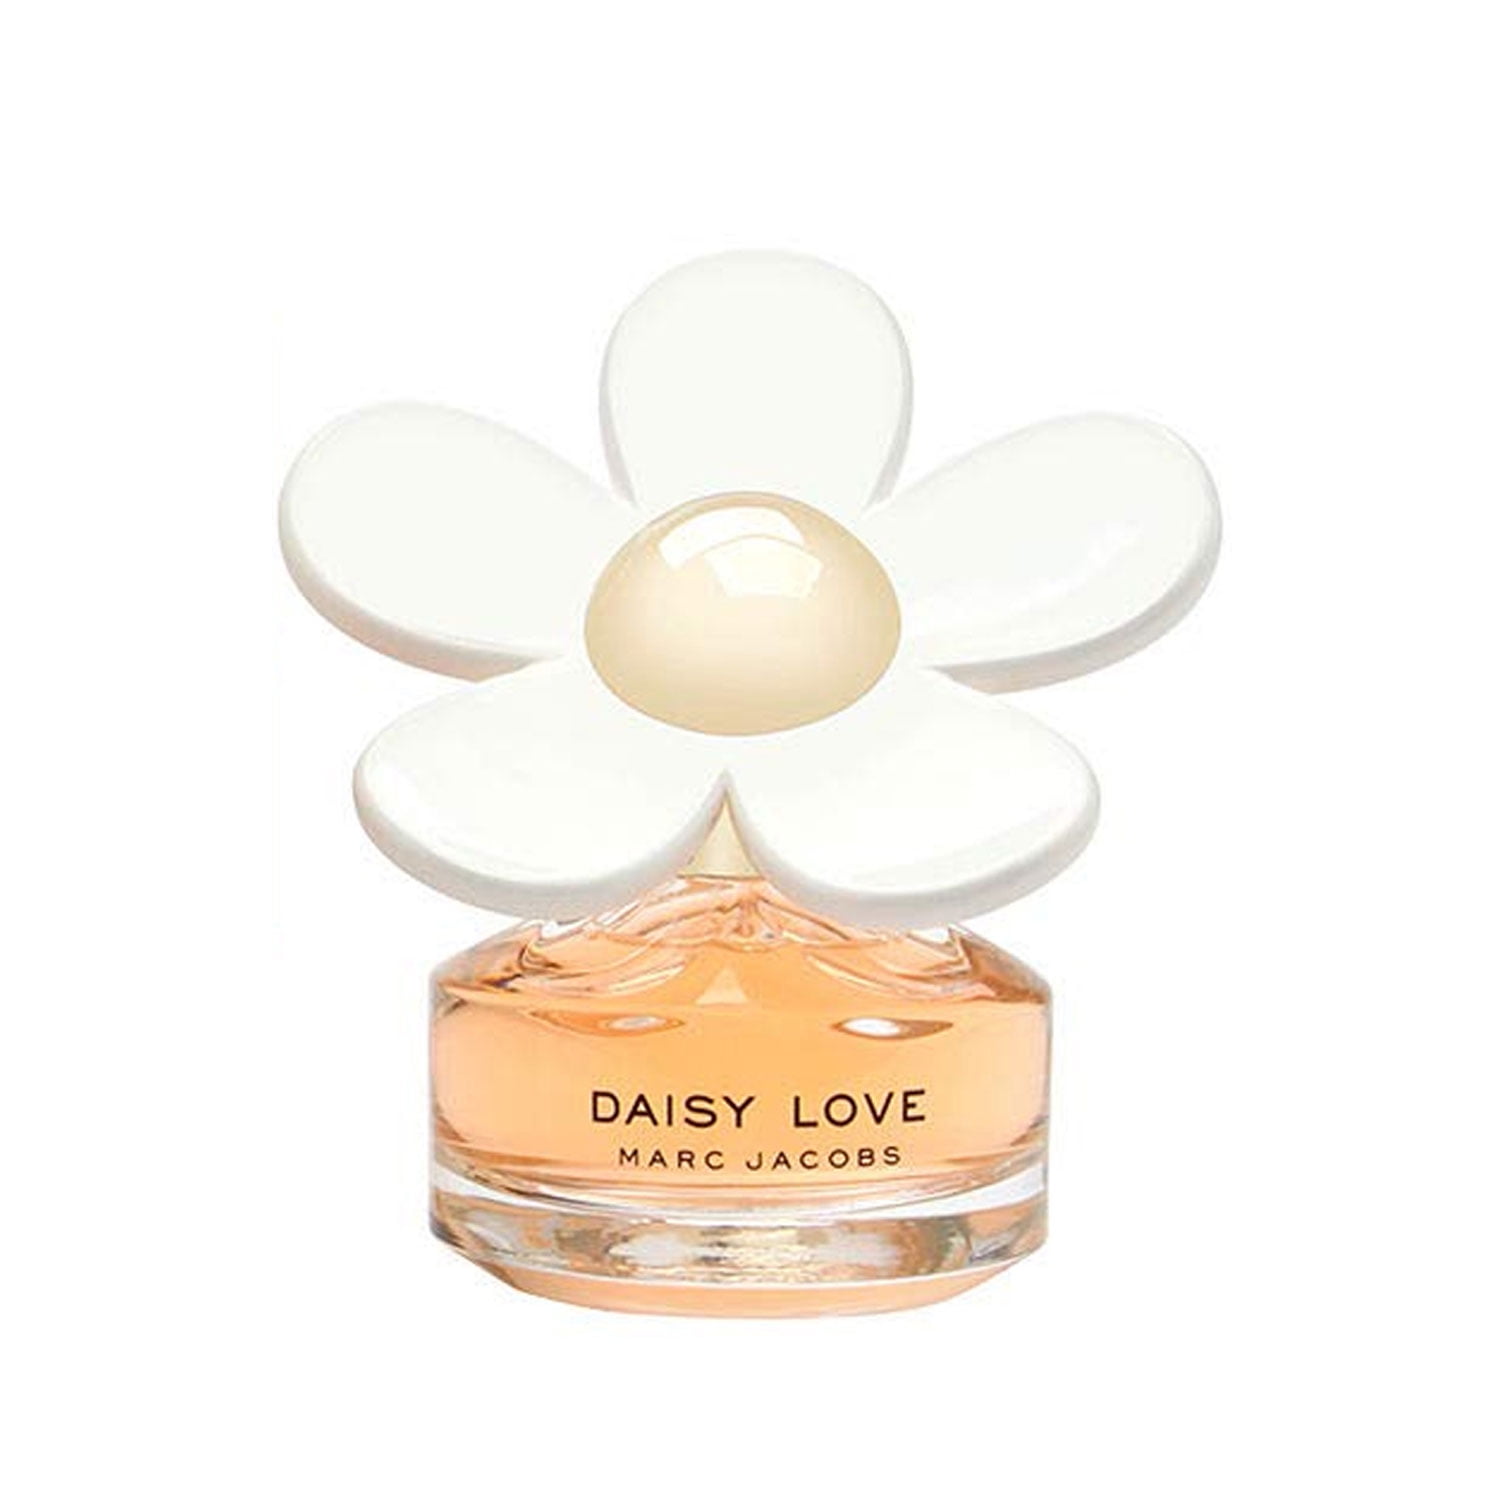 Marc Jacobs Daisy Love – Perfume Shop